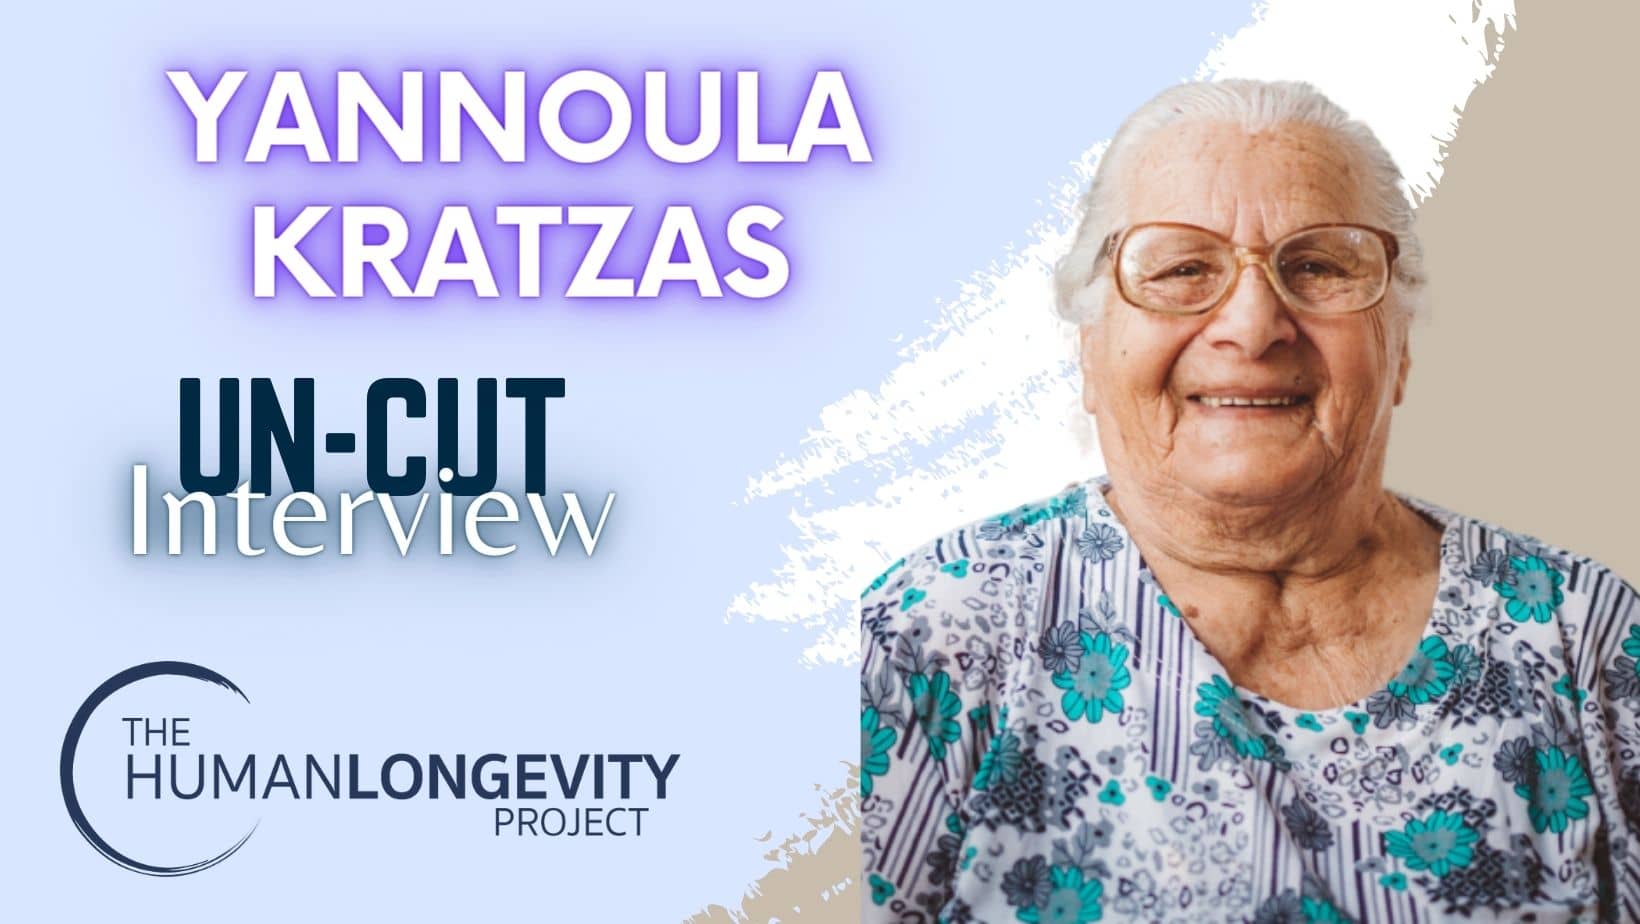 Human Longevity Project Uncut Interview With Yannoula Kratzas